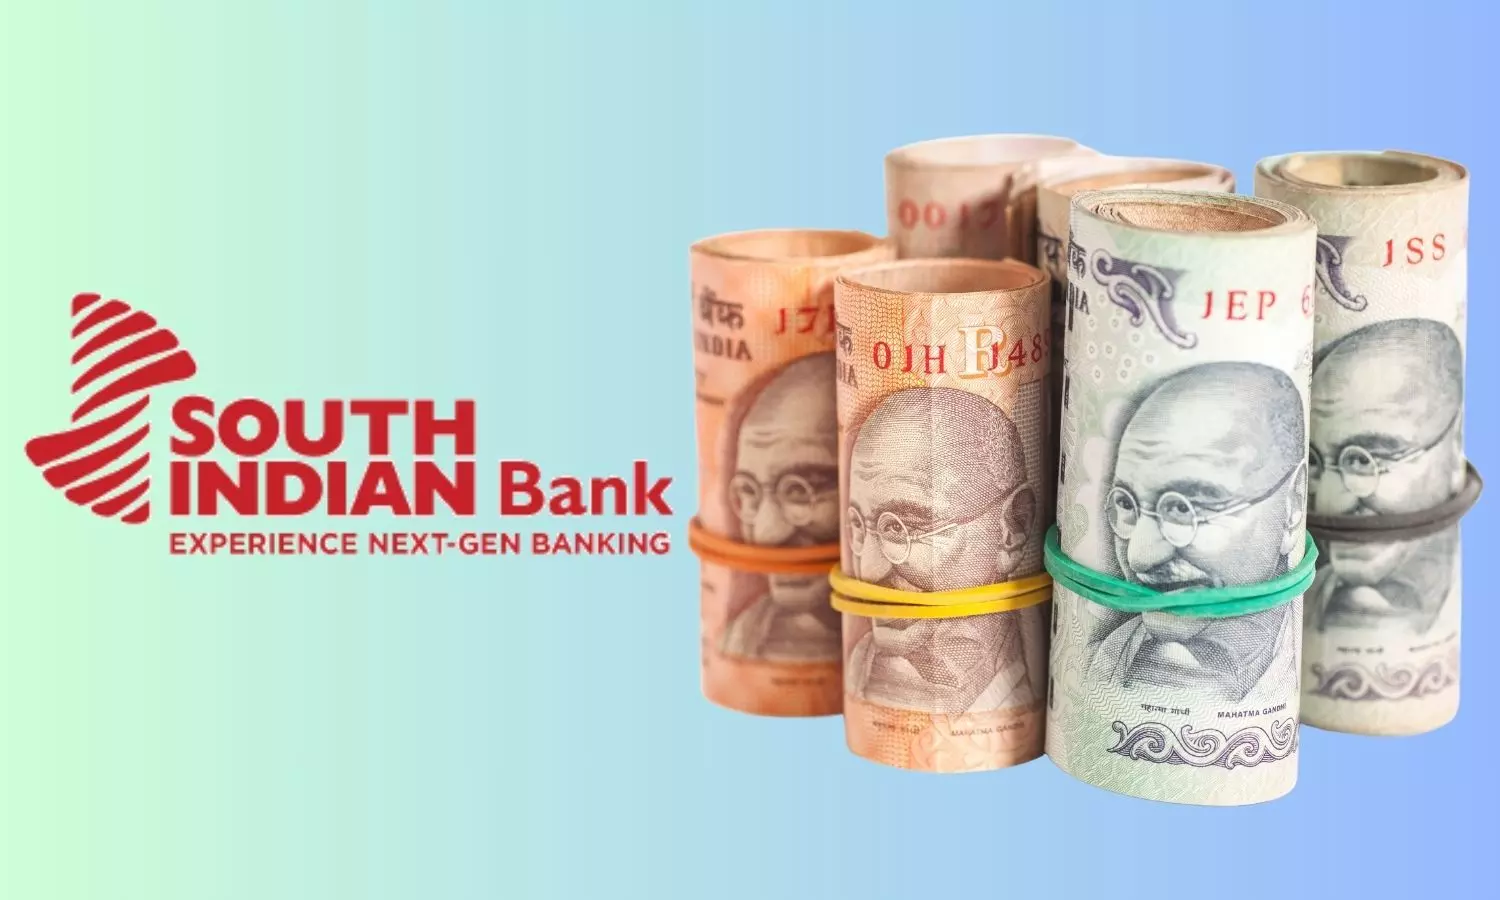 SIB logo and Indian Rupee notes